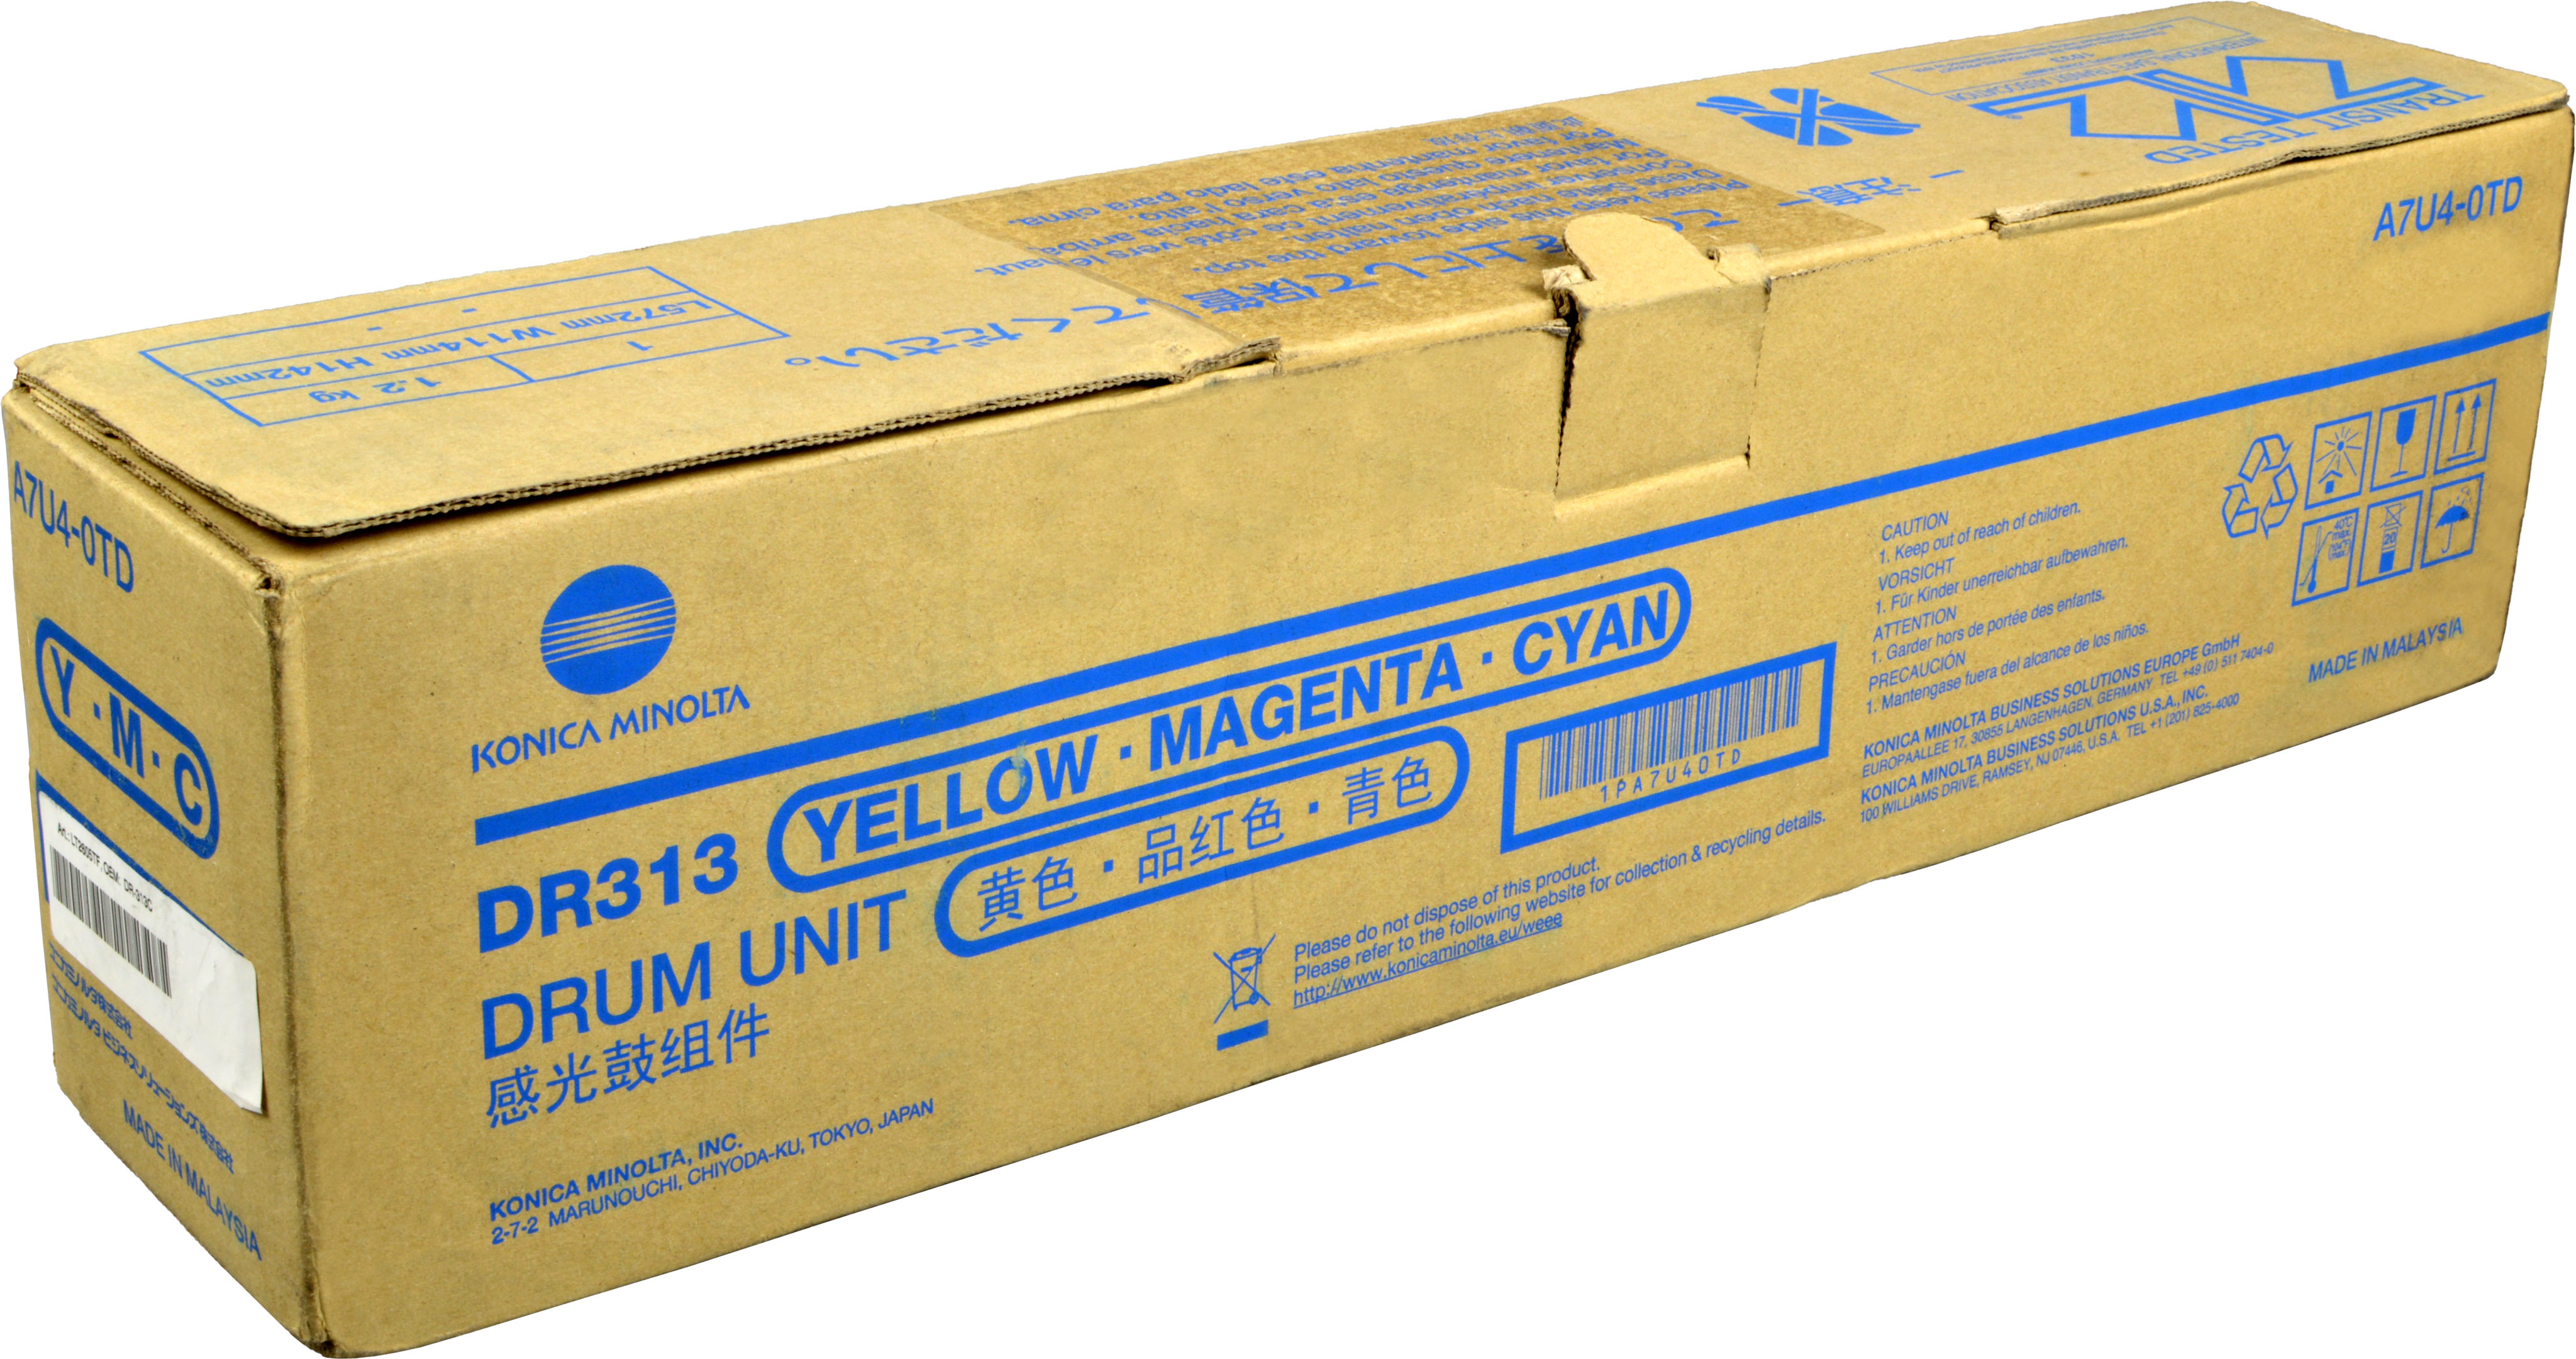 magenta, MINOLTA DR-313C Trommel KONICA (A7U40TD) cyan, yellow